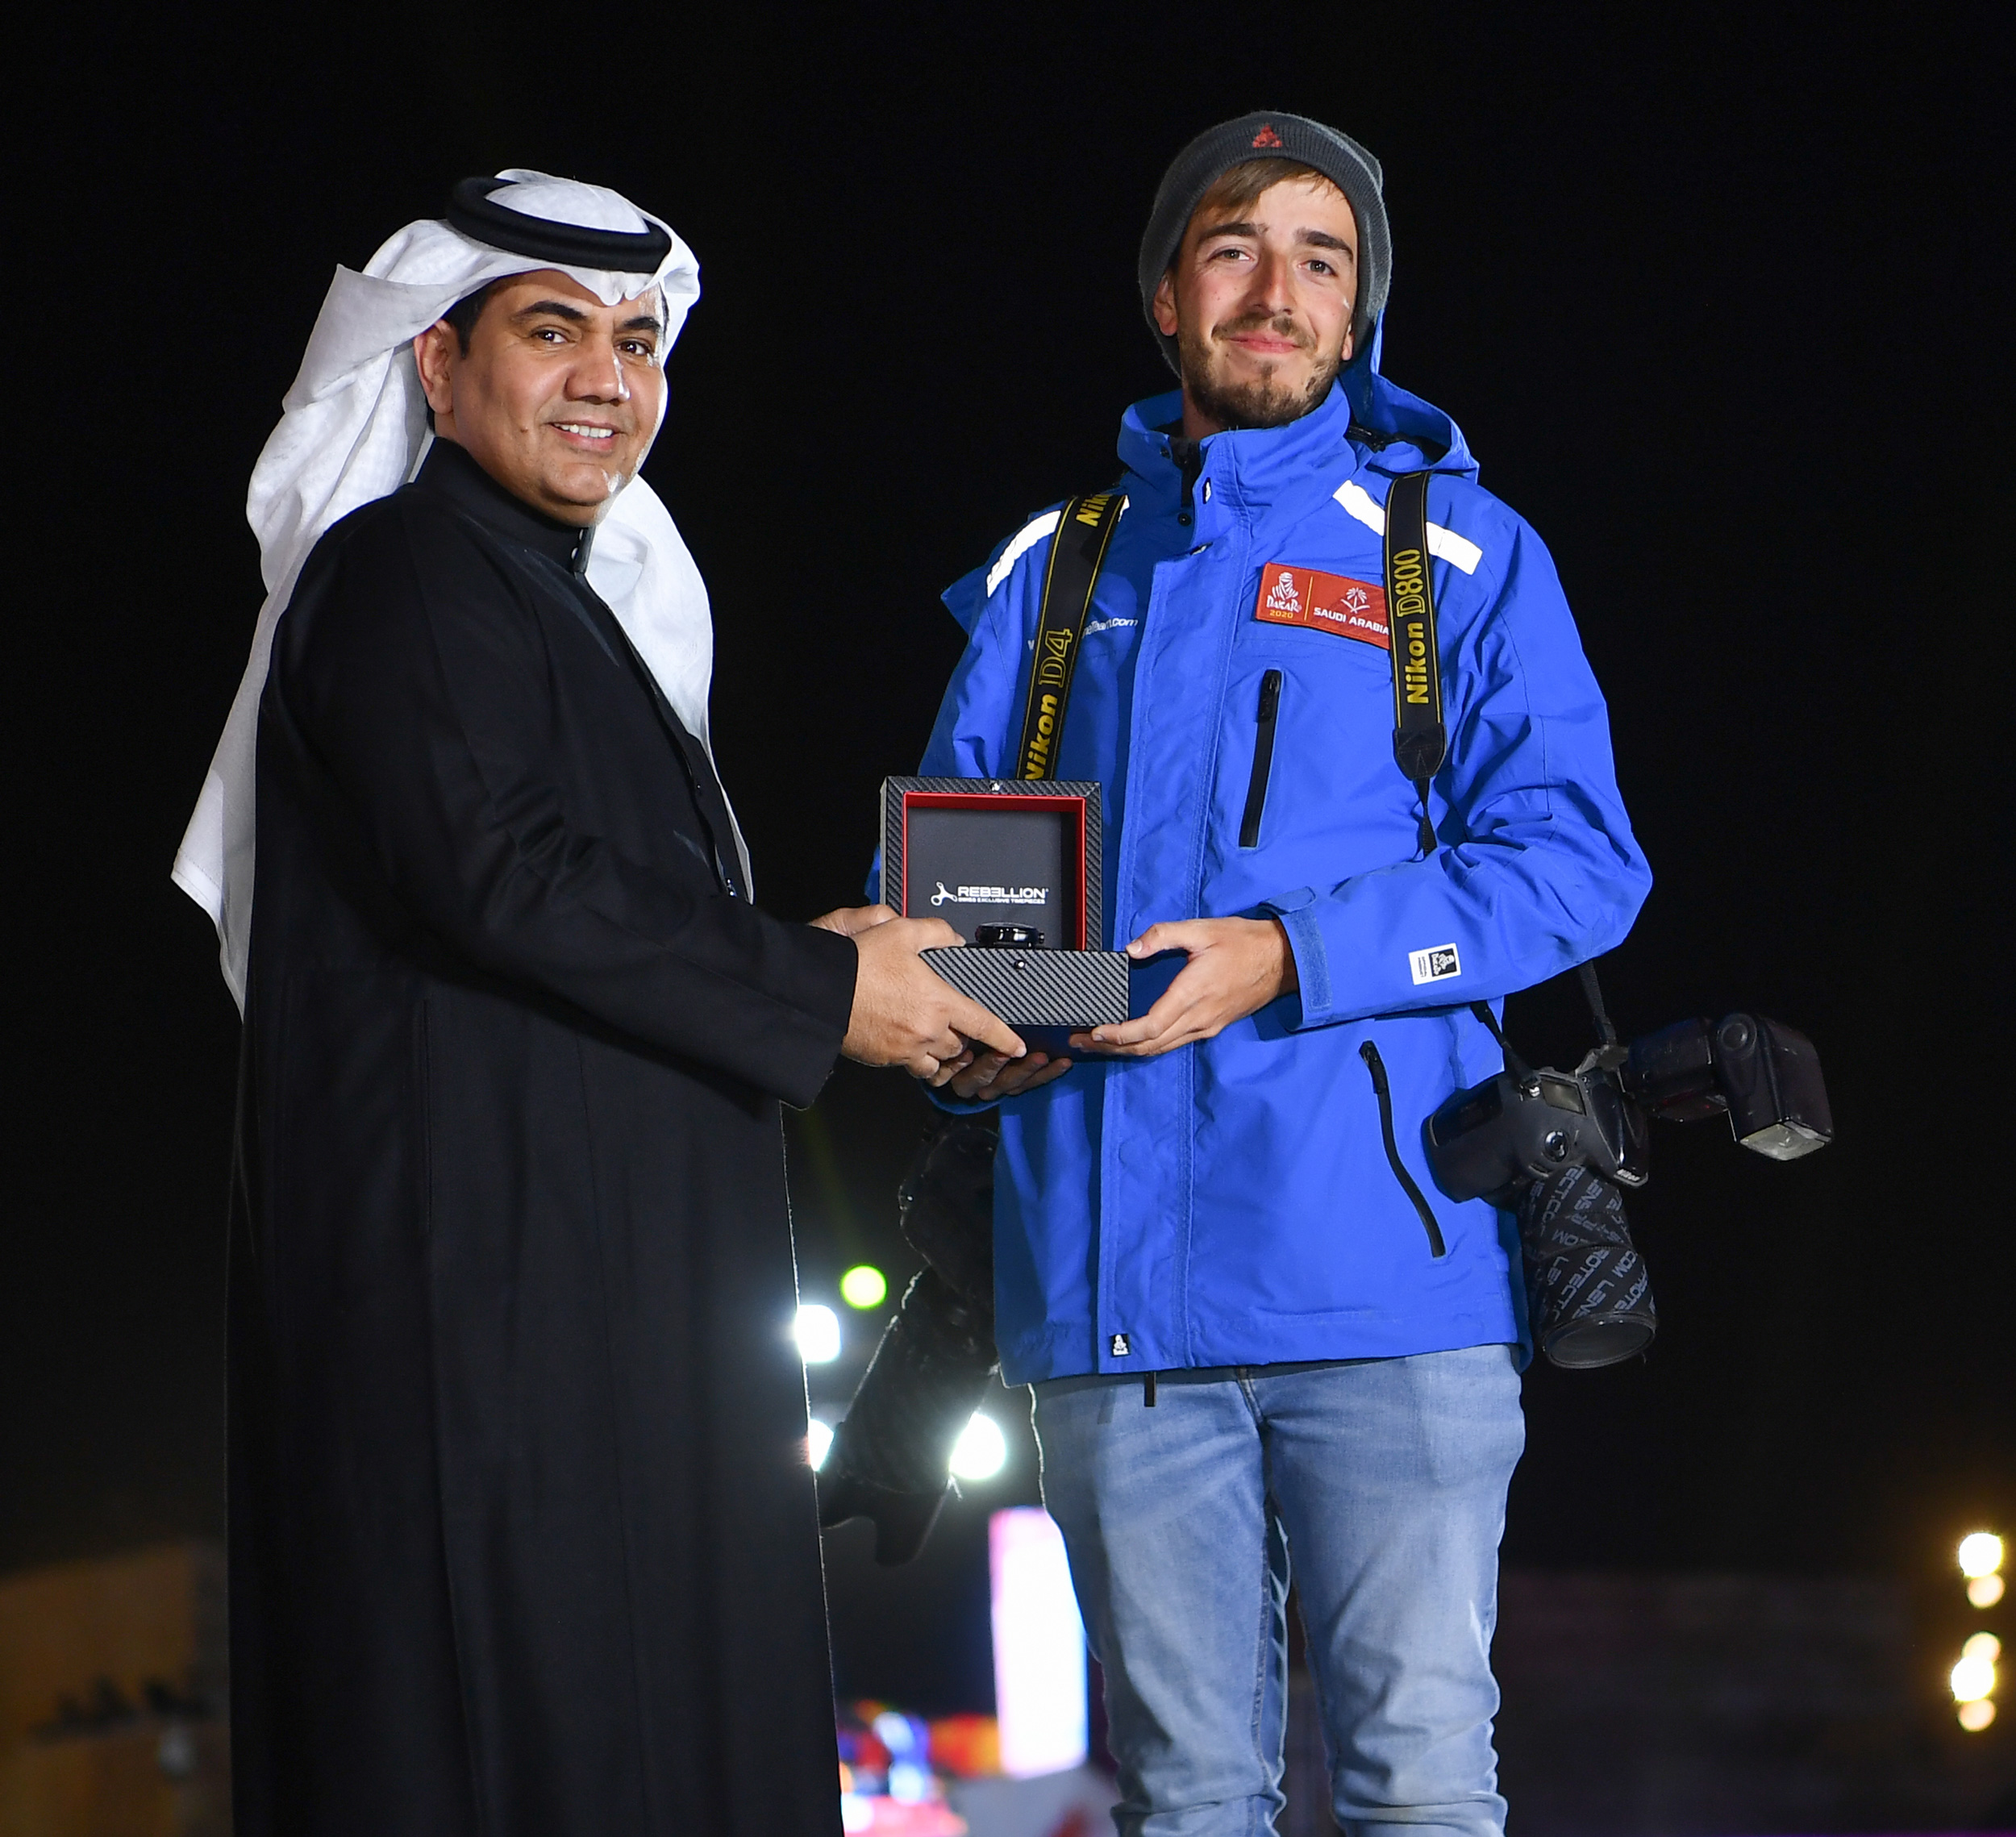 الإسباني شارلي لوبيز أفضل مصور في رالي داكار السعودية 2020